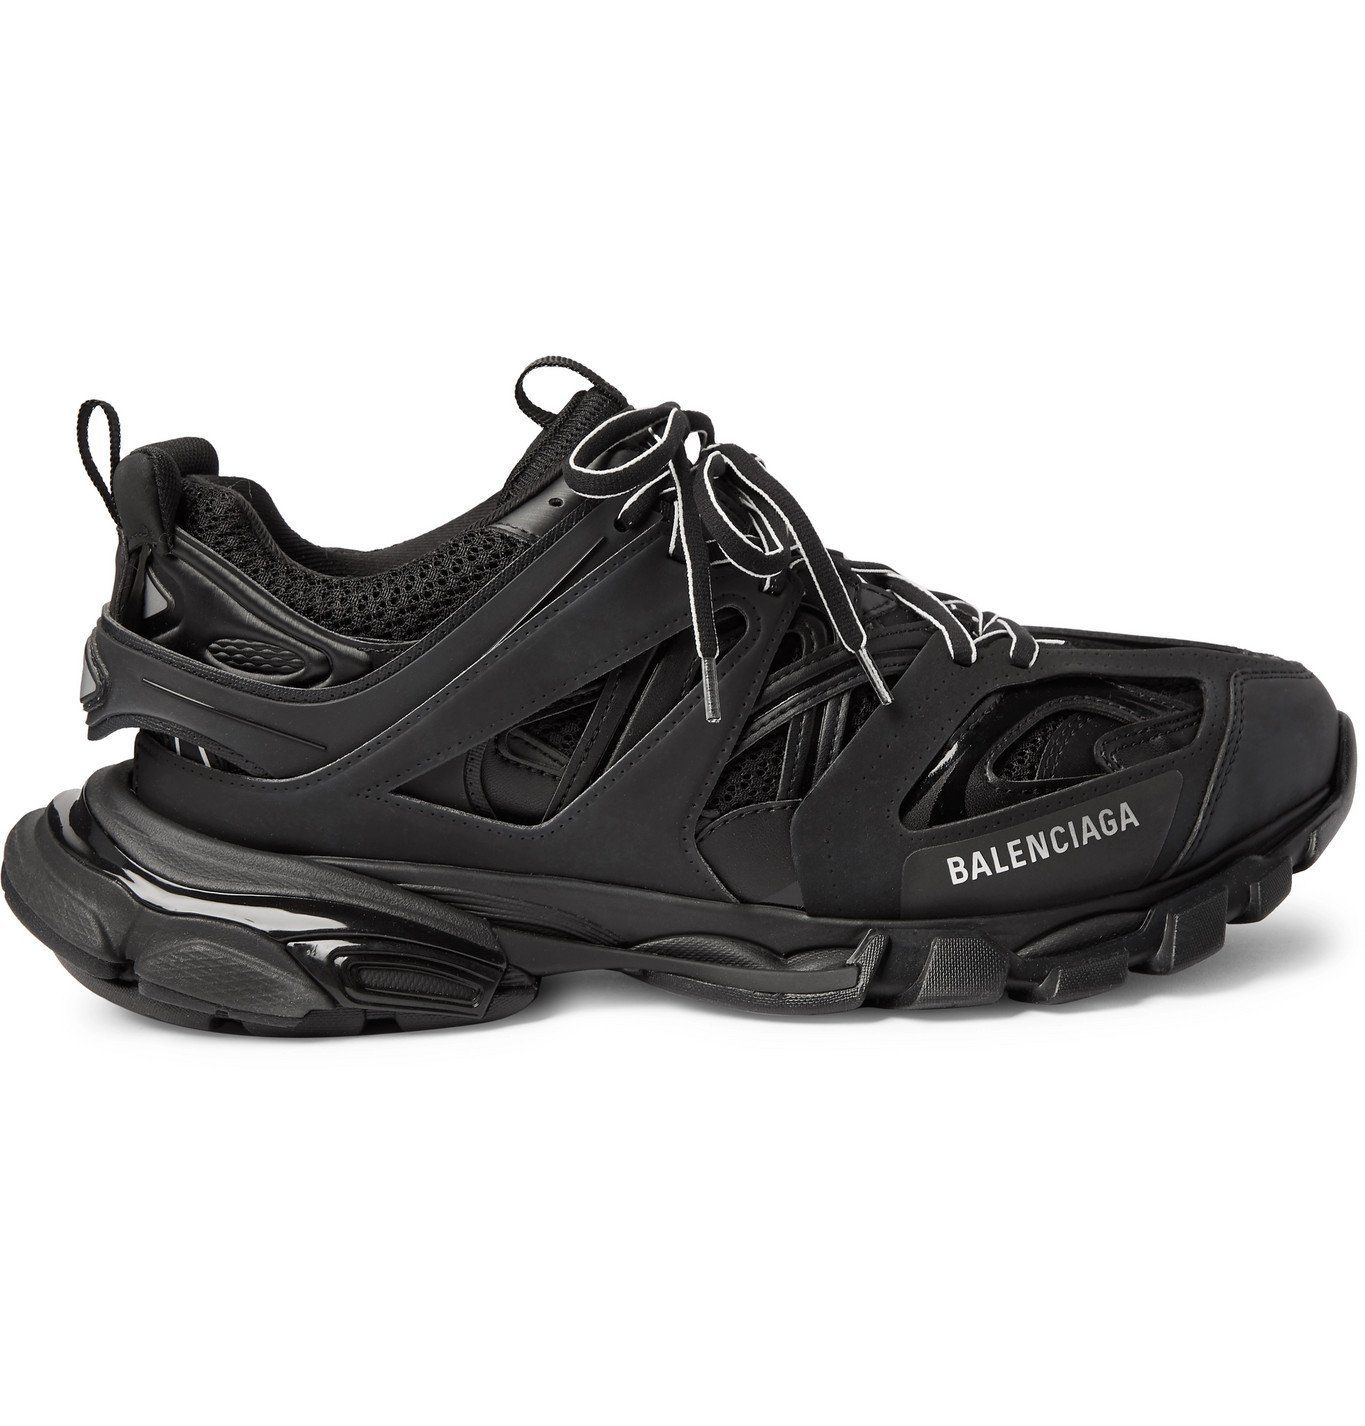 Balenciaga - Track Nylon, Mesh and Rubber Sneakers - Black Balenciaga